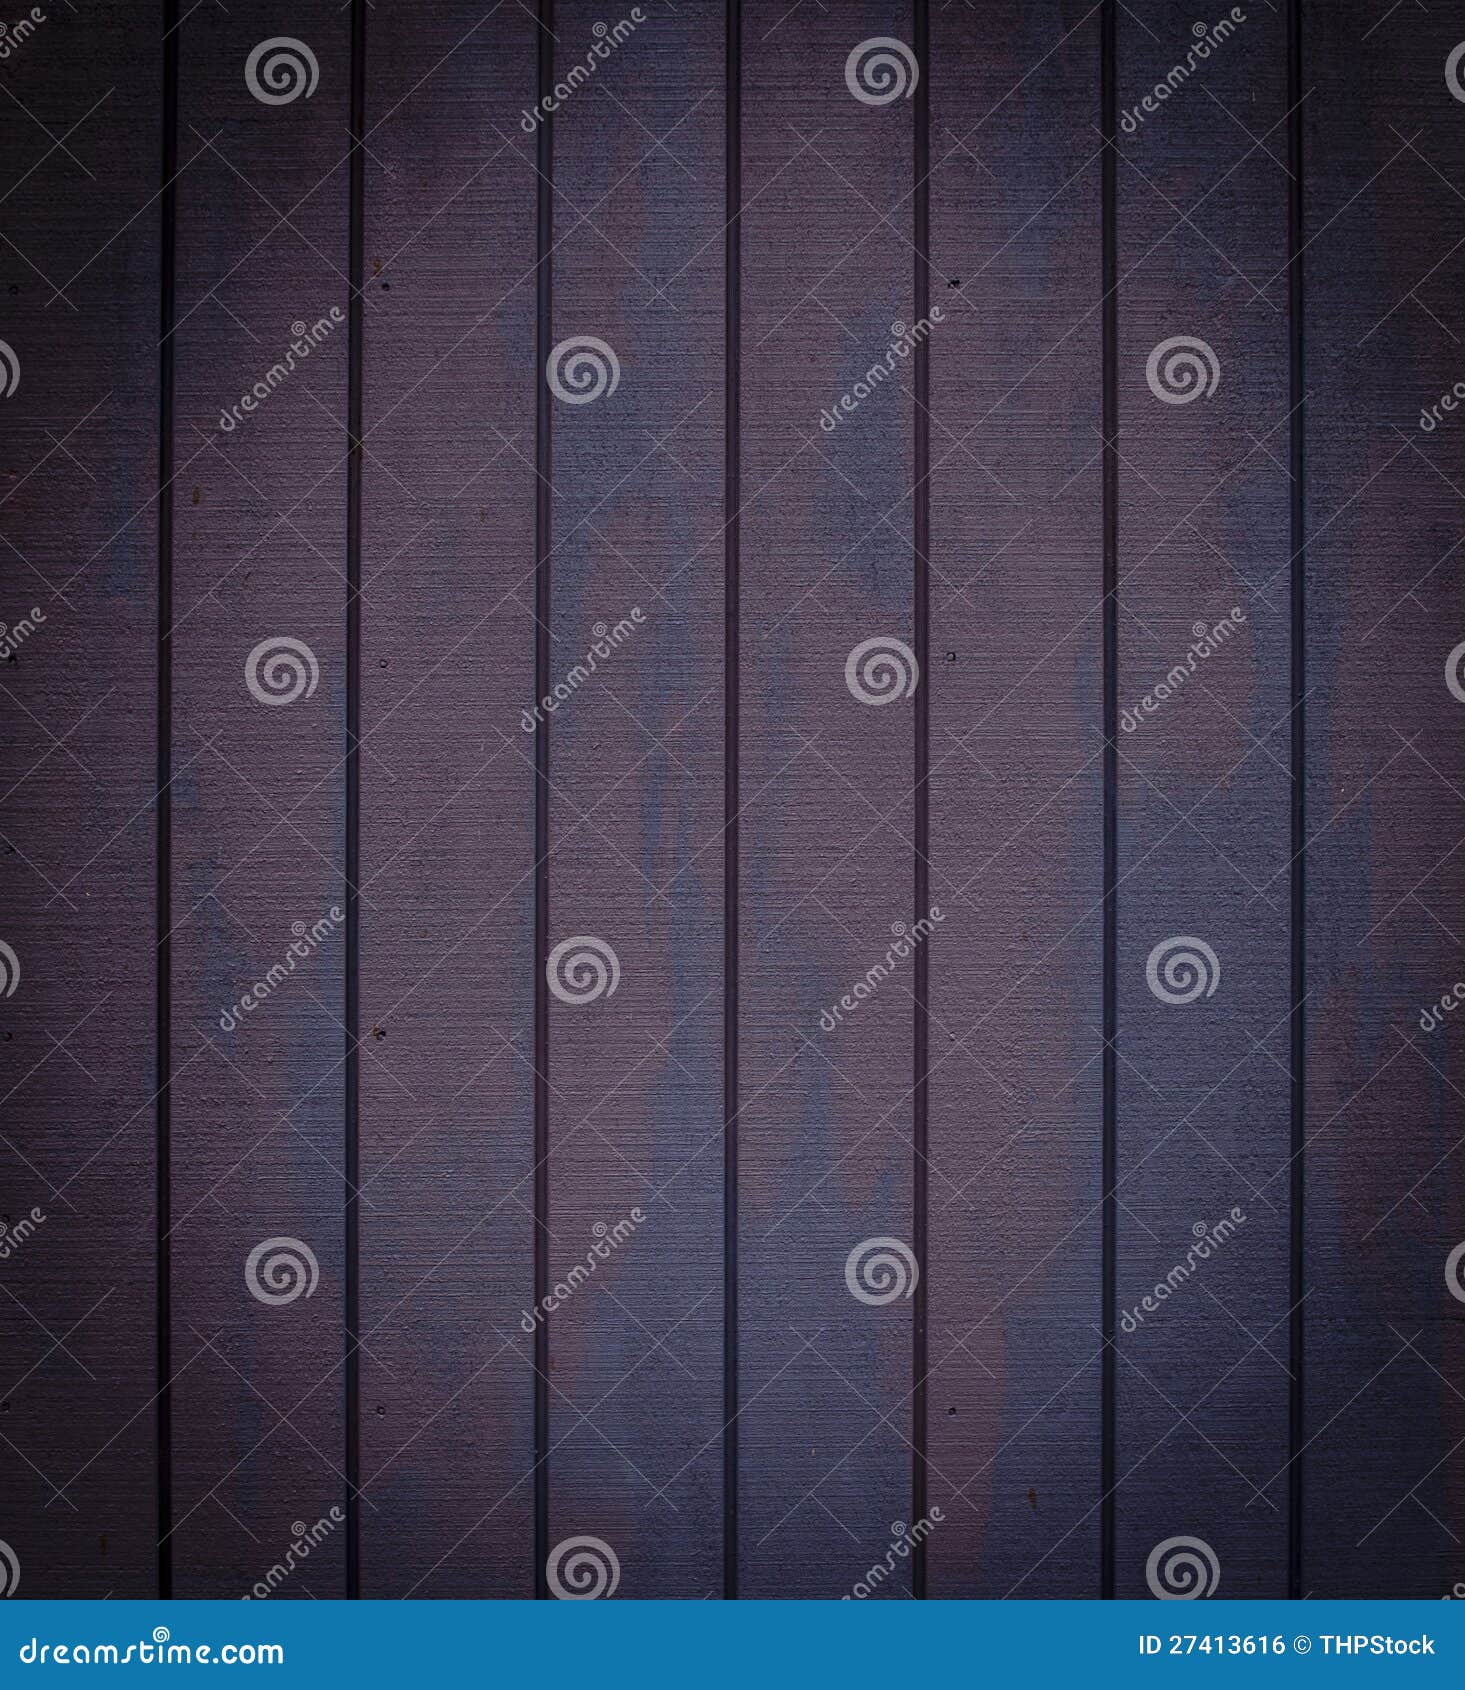 Dark Wooden Panel Background. Dark purple and blue wooden panel background texture